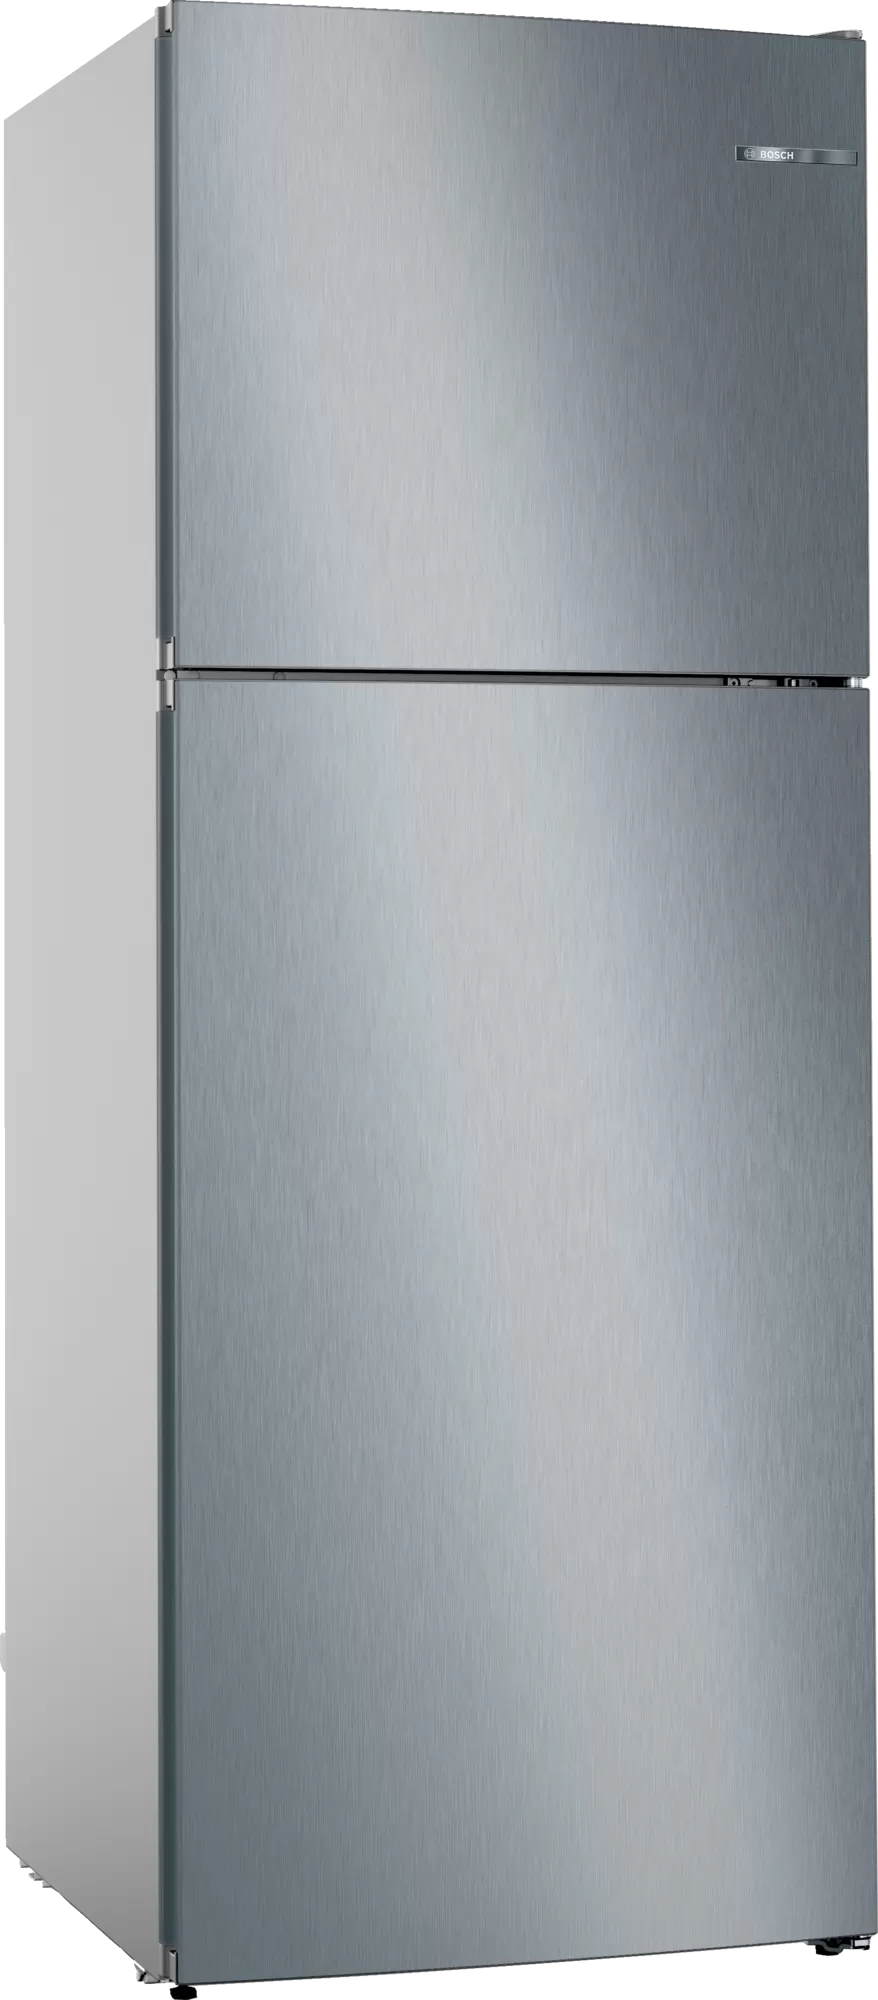 Холодильник Bosch KDN55NL20U в интернет-магазине, главное фото